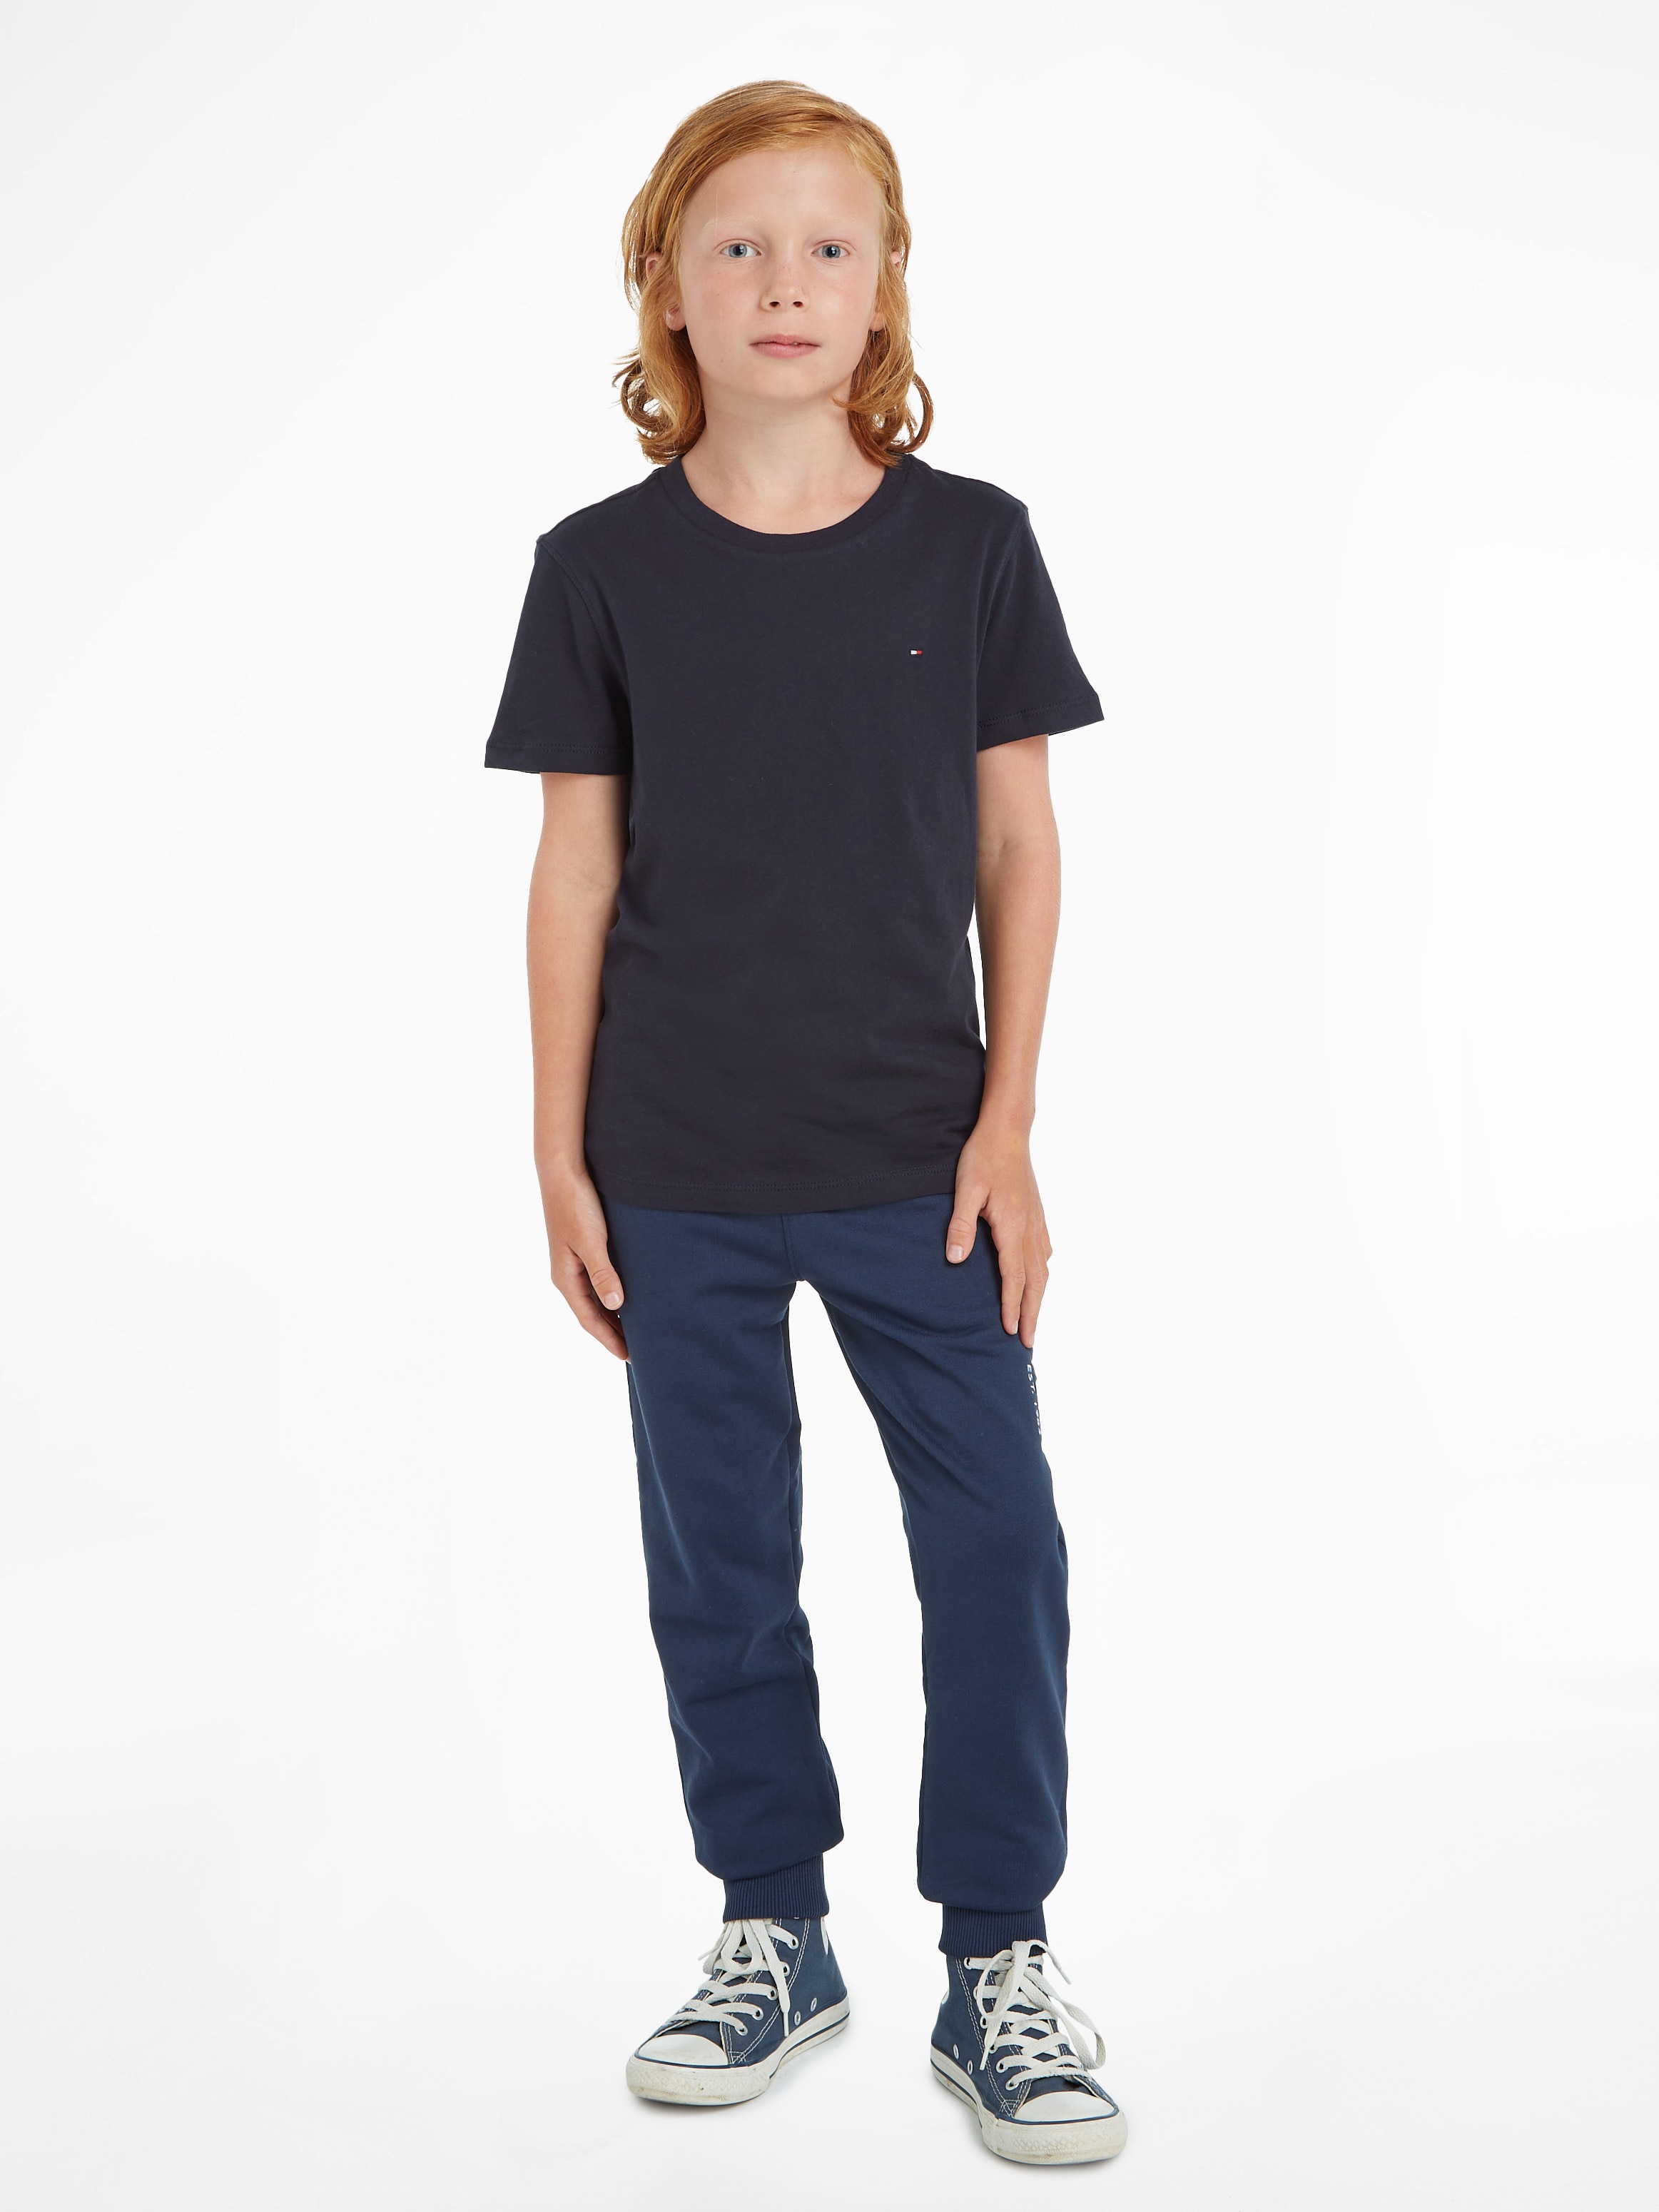 Tommy Hilfiger T-Shirt KNIT«, BASIC Kinder Junior CN MiniMe,für Jungen »BOYS bei Kids